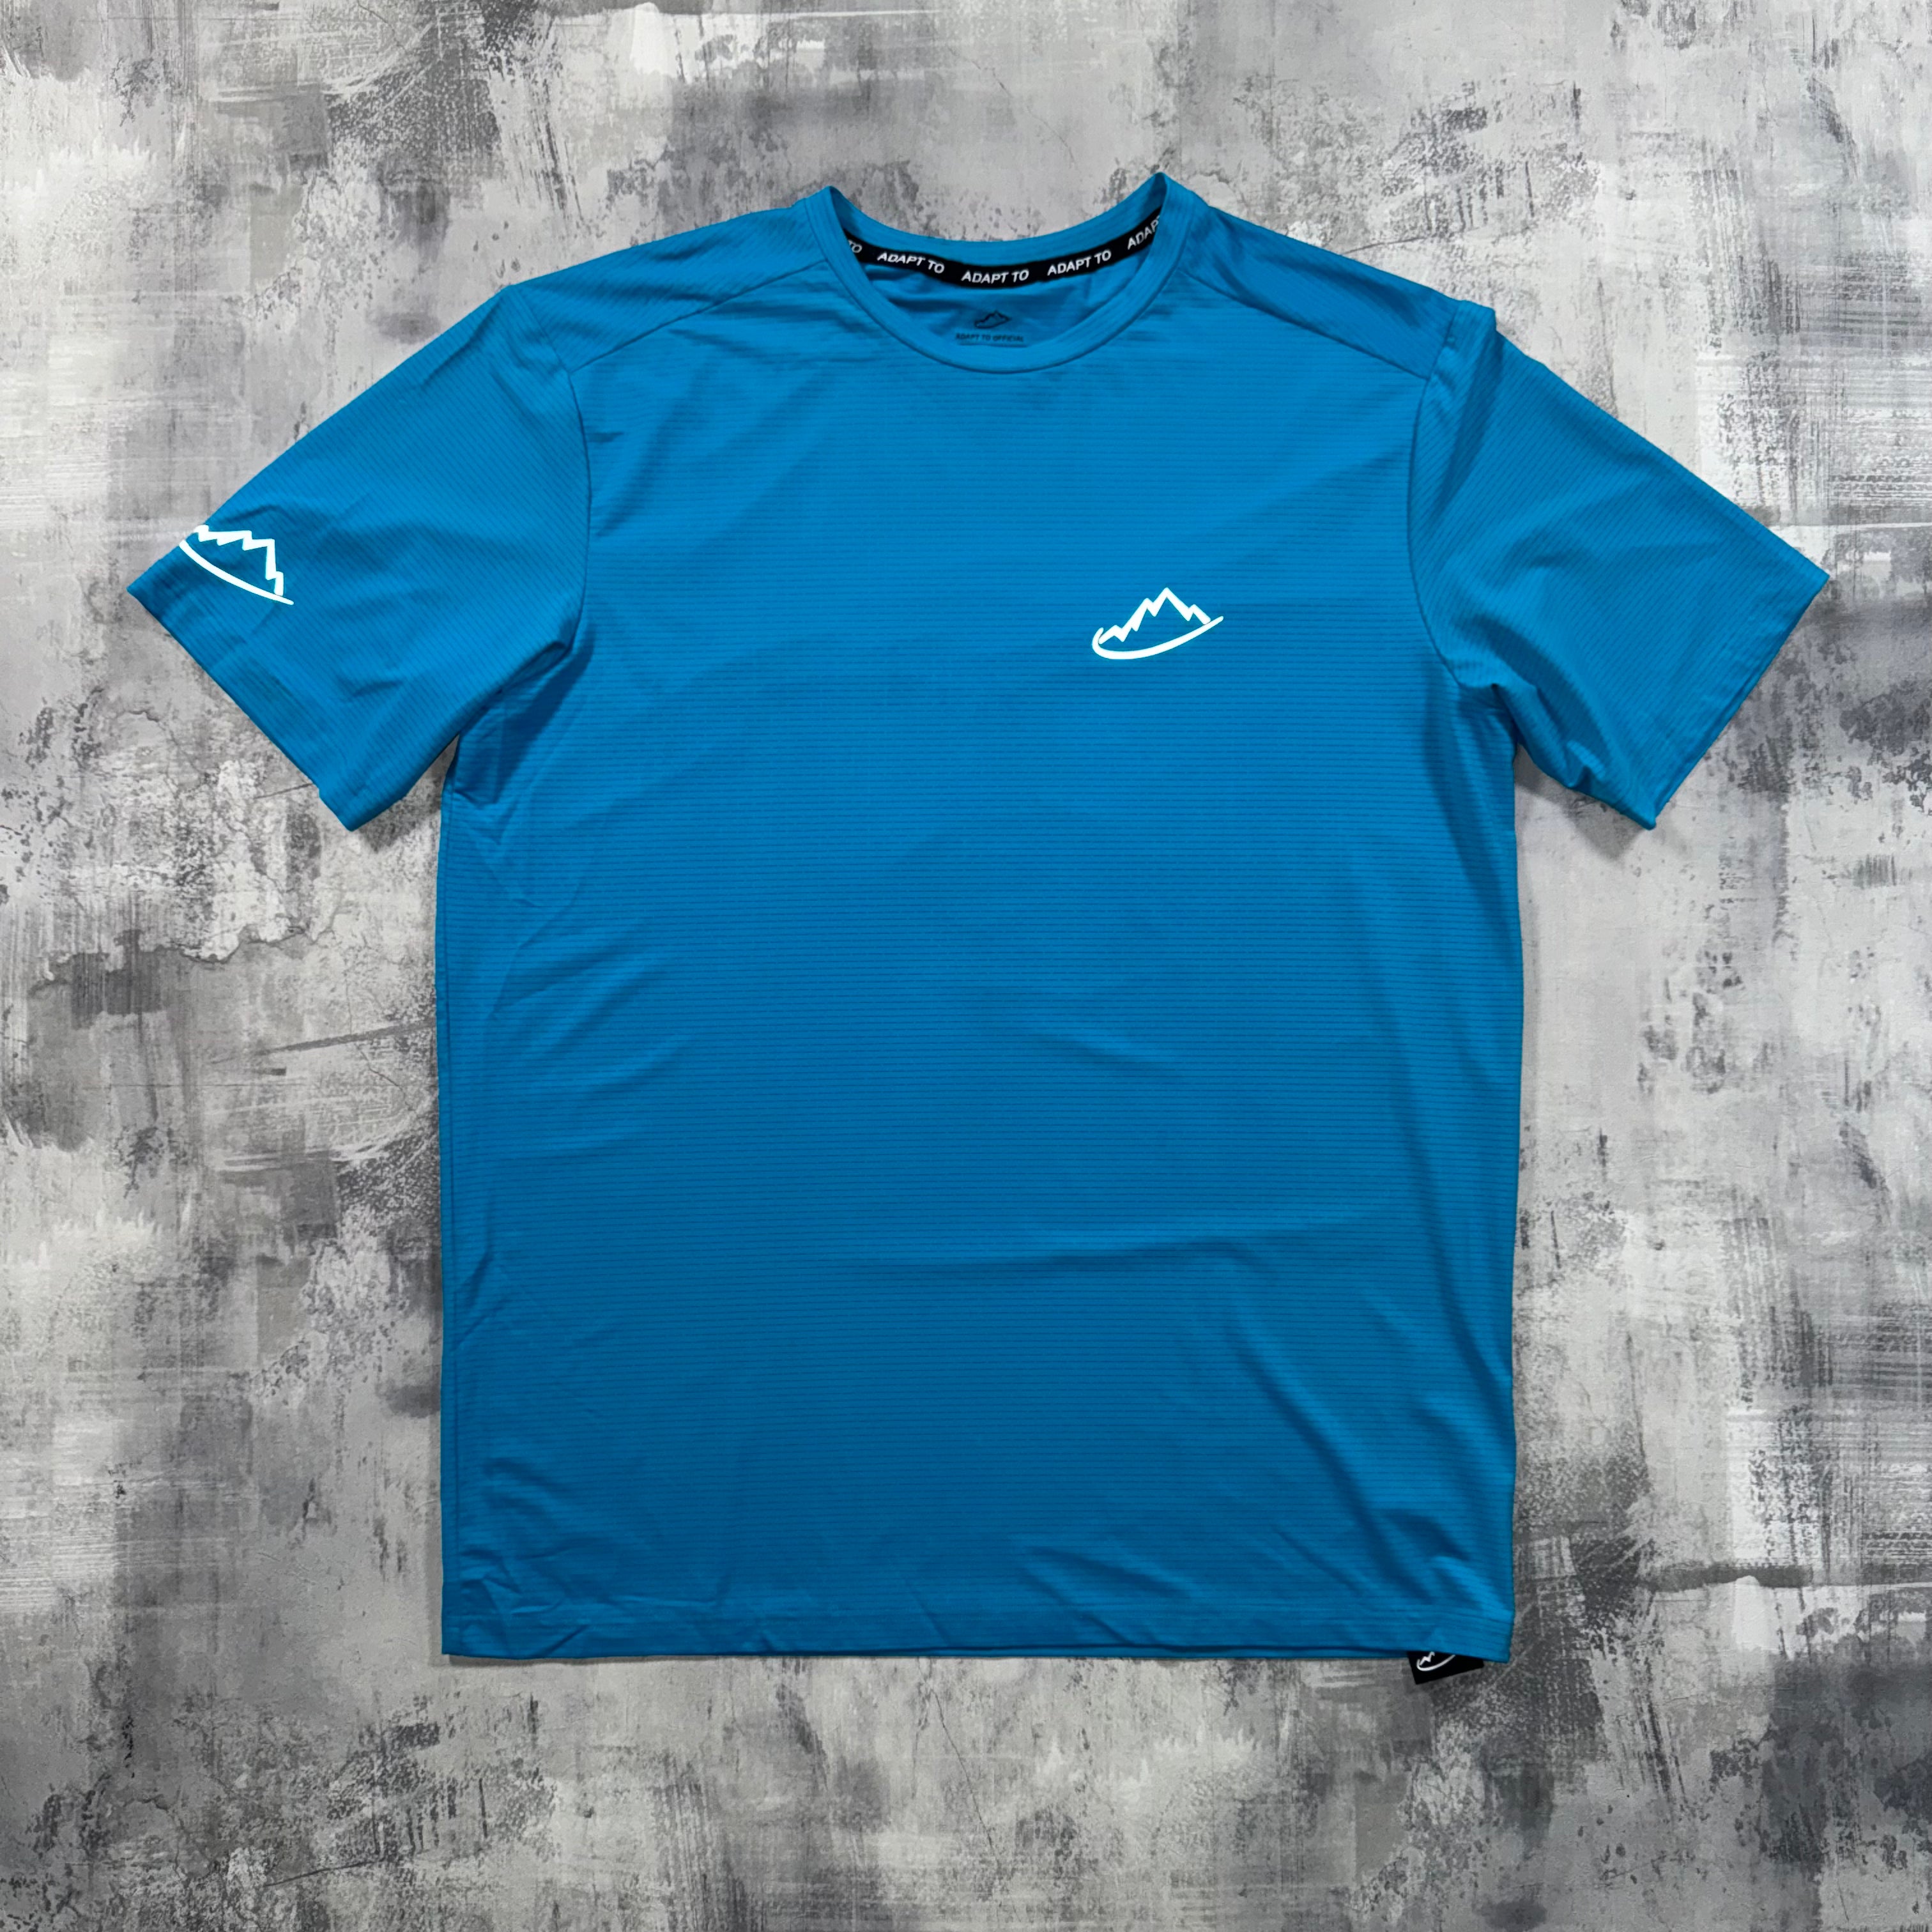 Adapt To Blue Tech T-Shirt